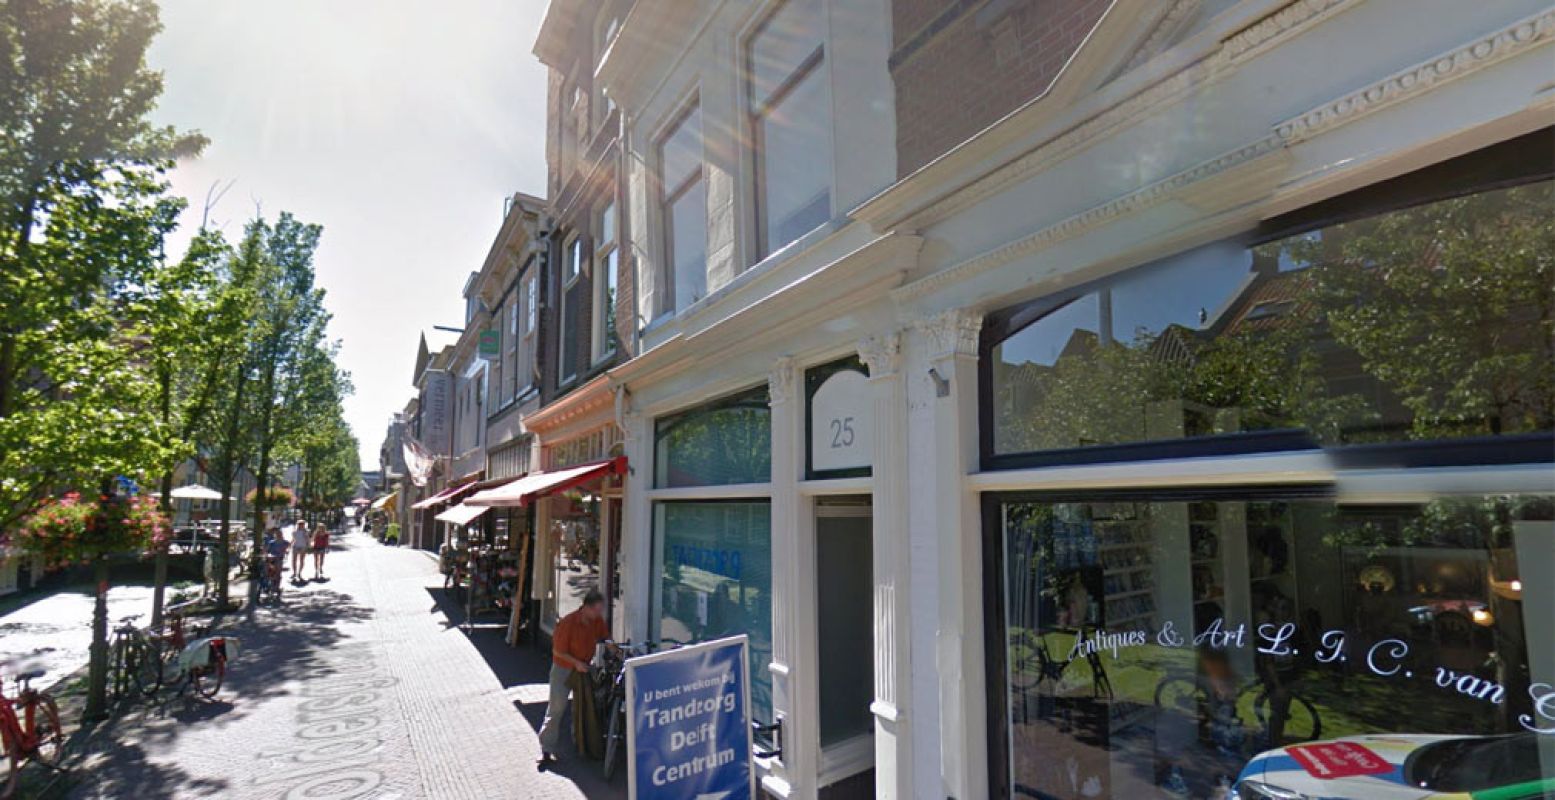 Voldersgracht 25 in Delft. Foto: Google Streetview